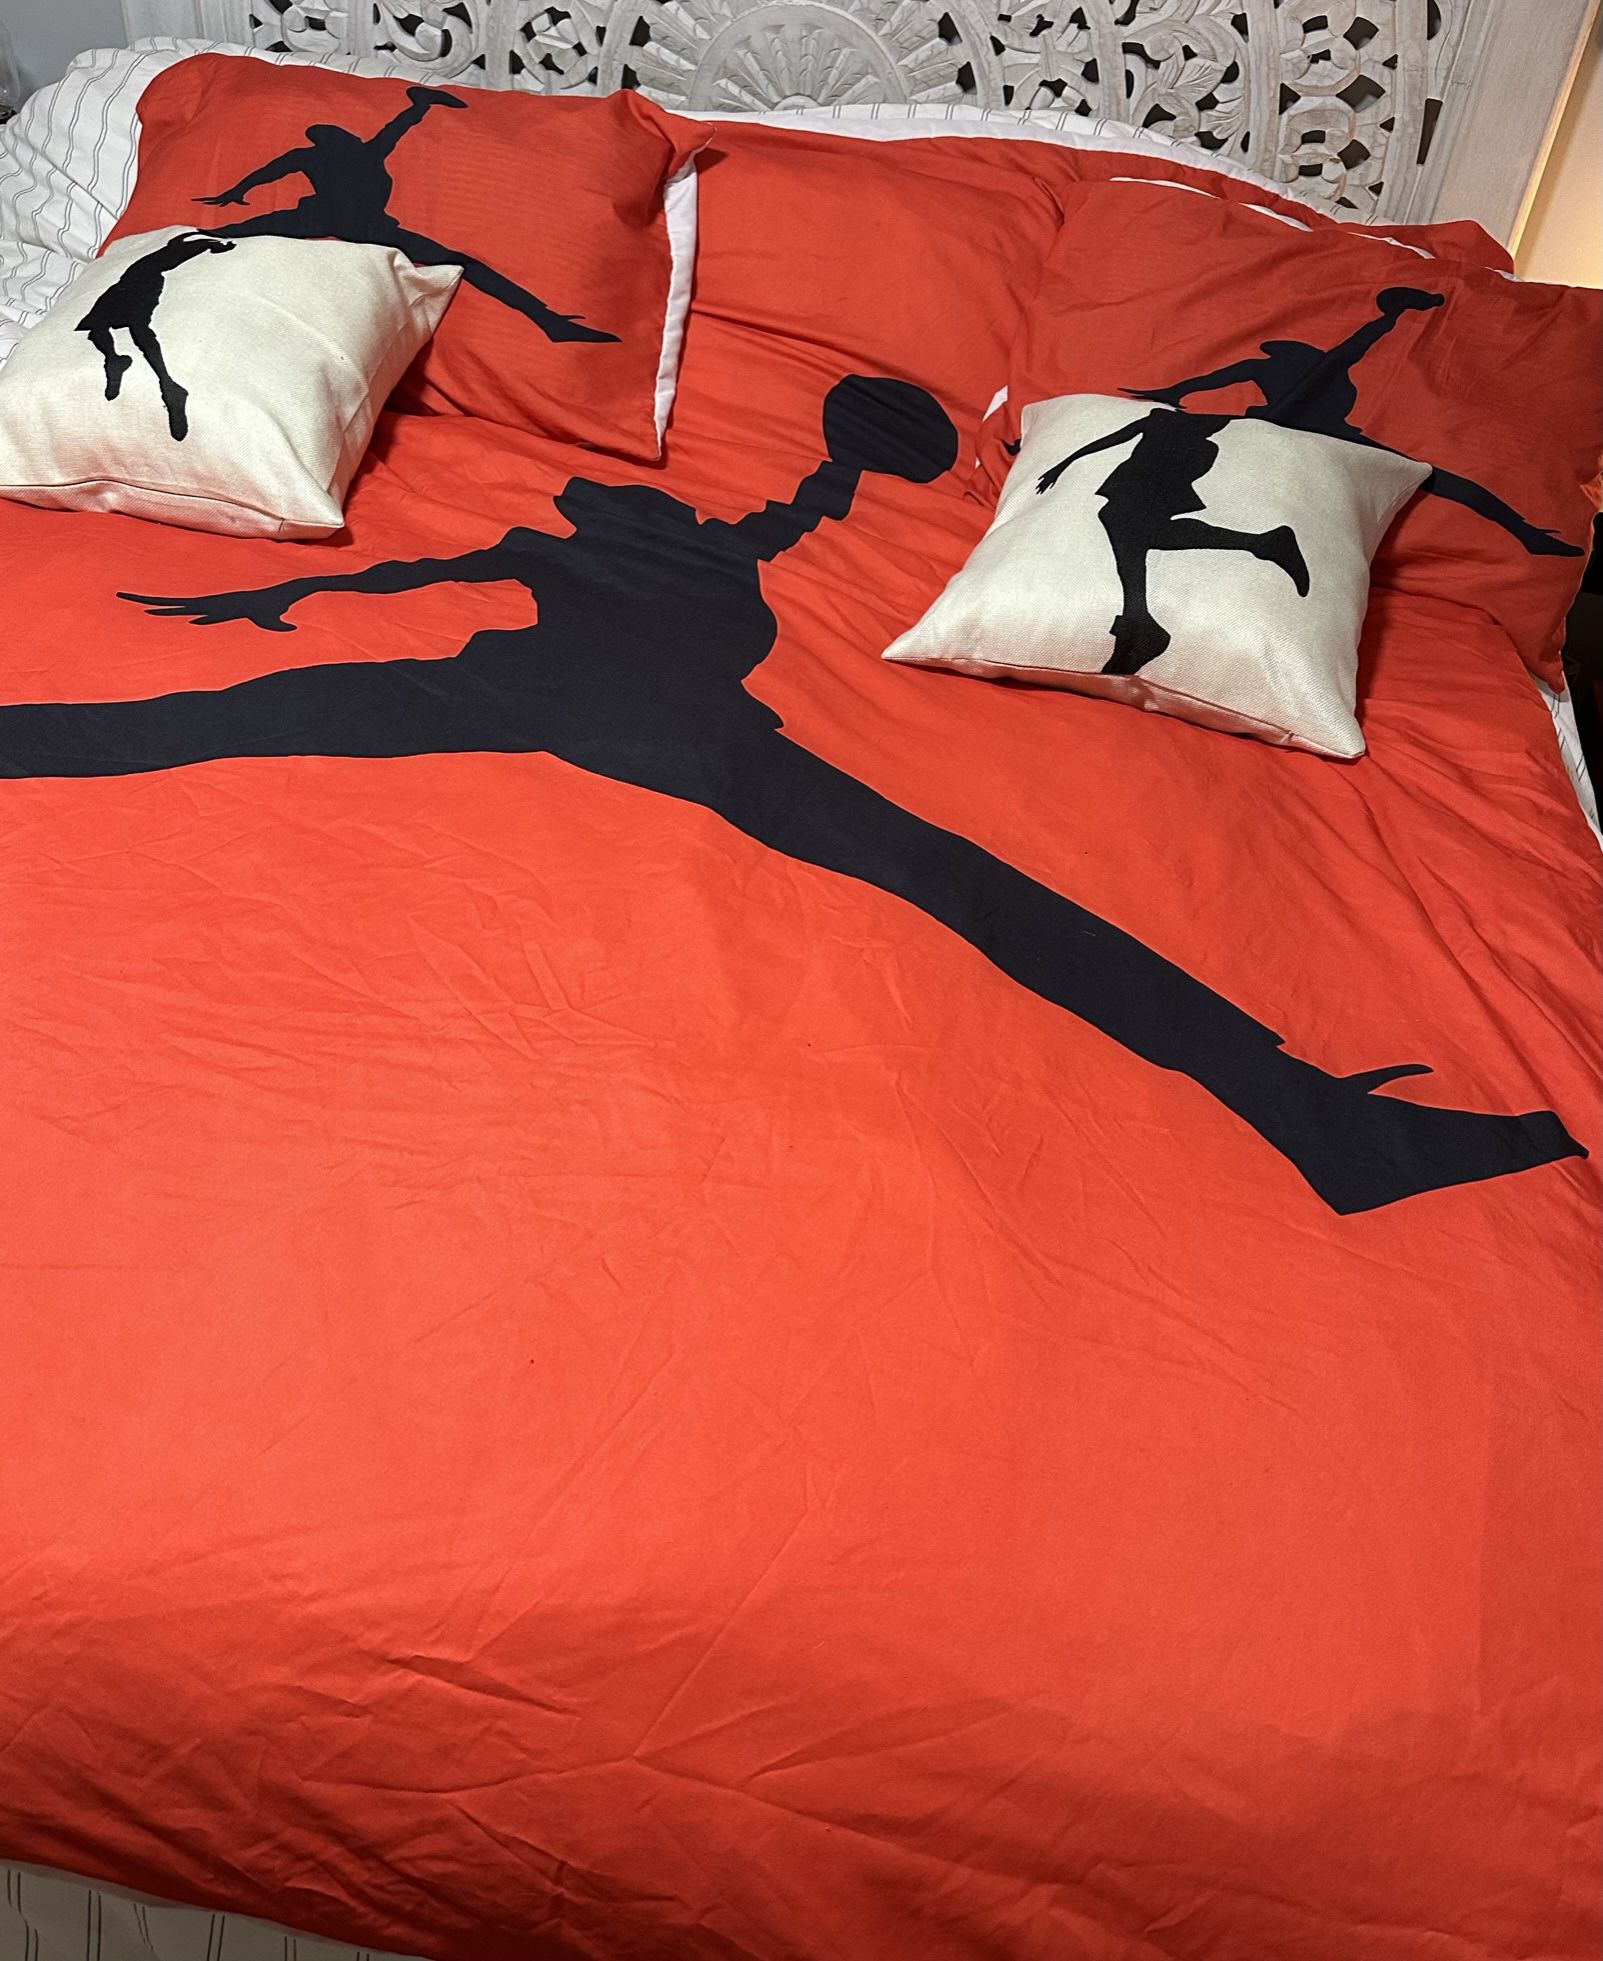 Jordan Comforter, Jordan Pillow Cases, Jordan Throw Pillows